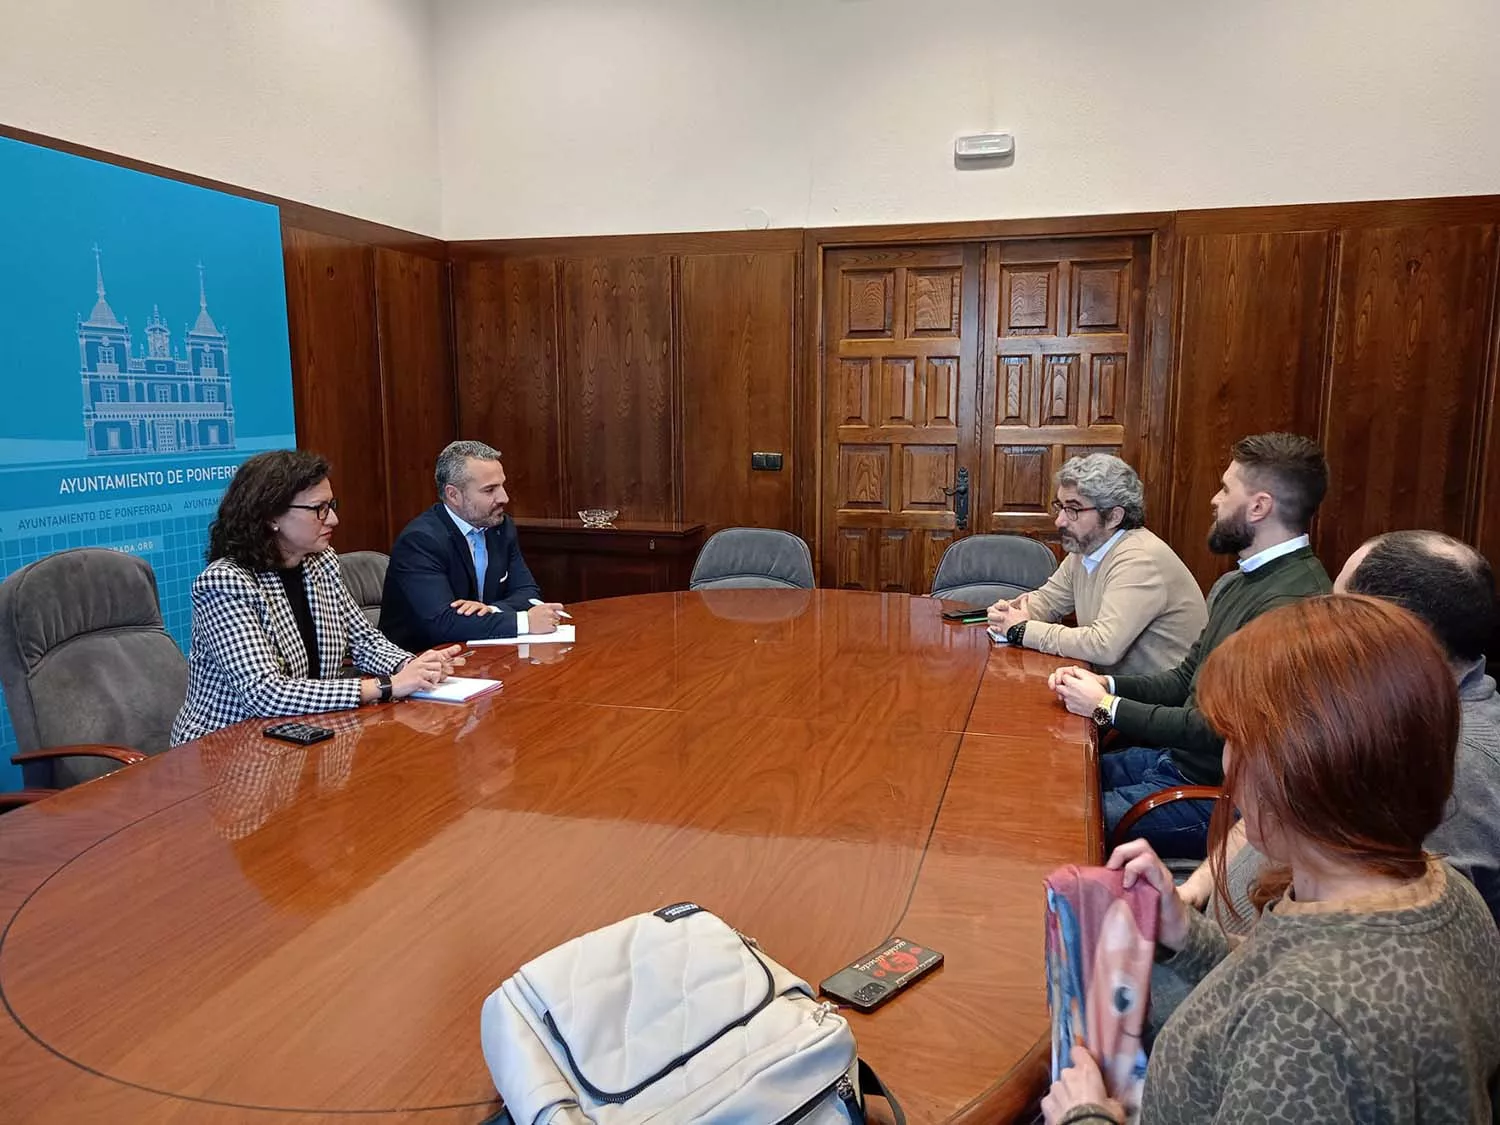 Reunión entre el Ayuntamiento de Ponferrada y Teleperformance